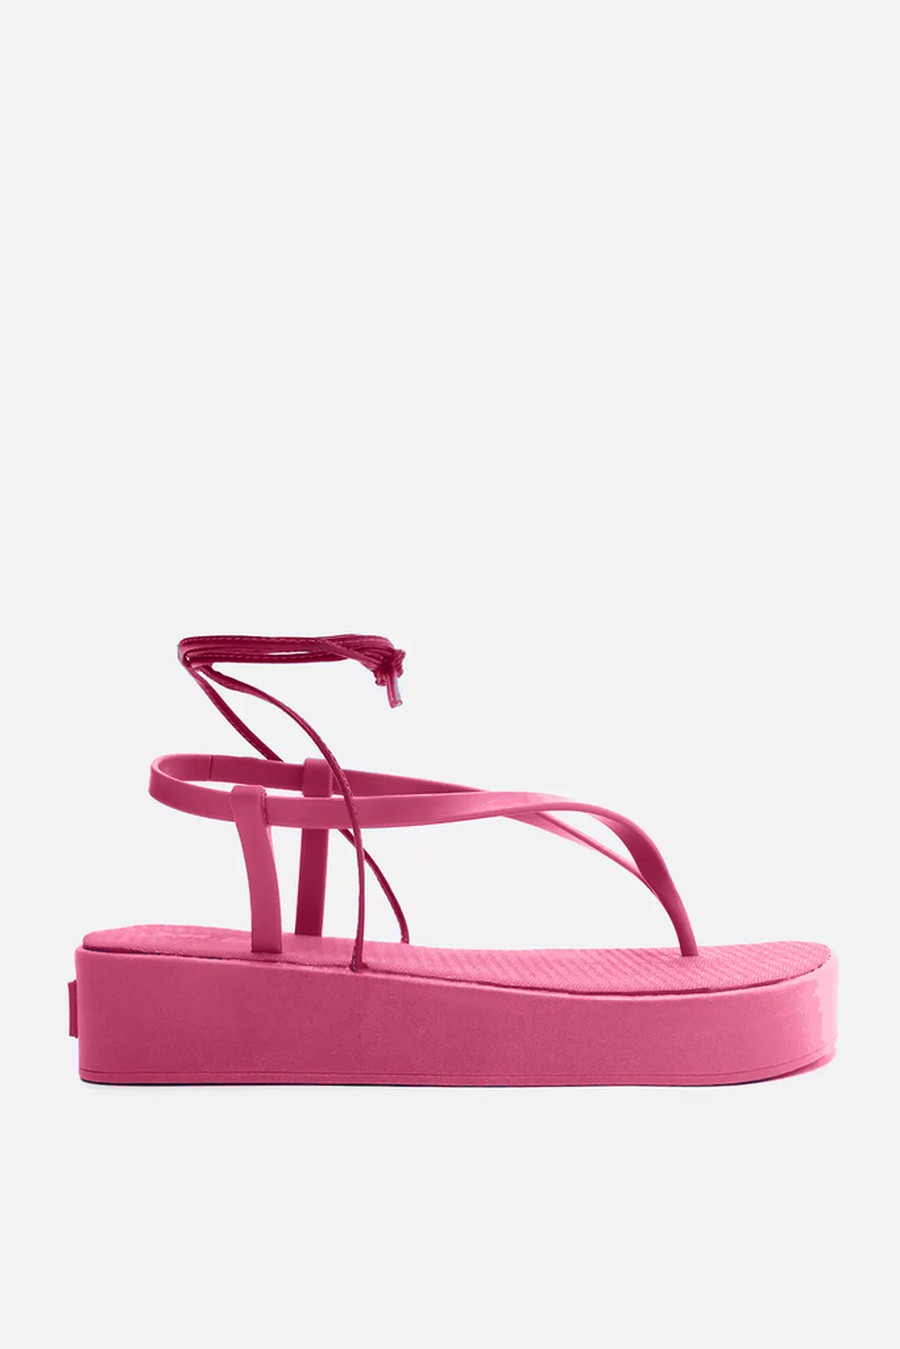 sandália flatform rosa 19036 arezzo by triya